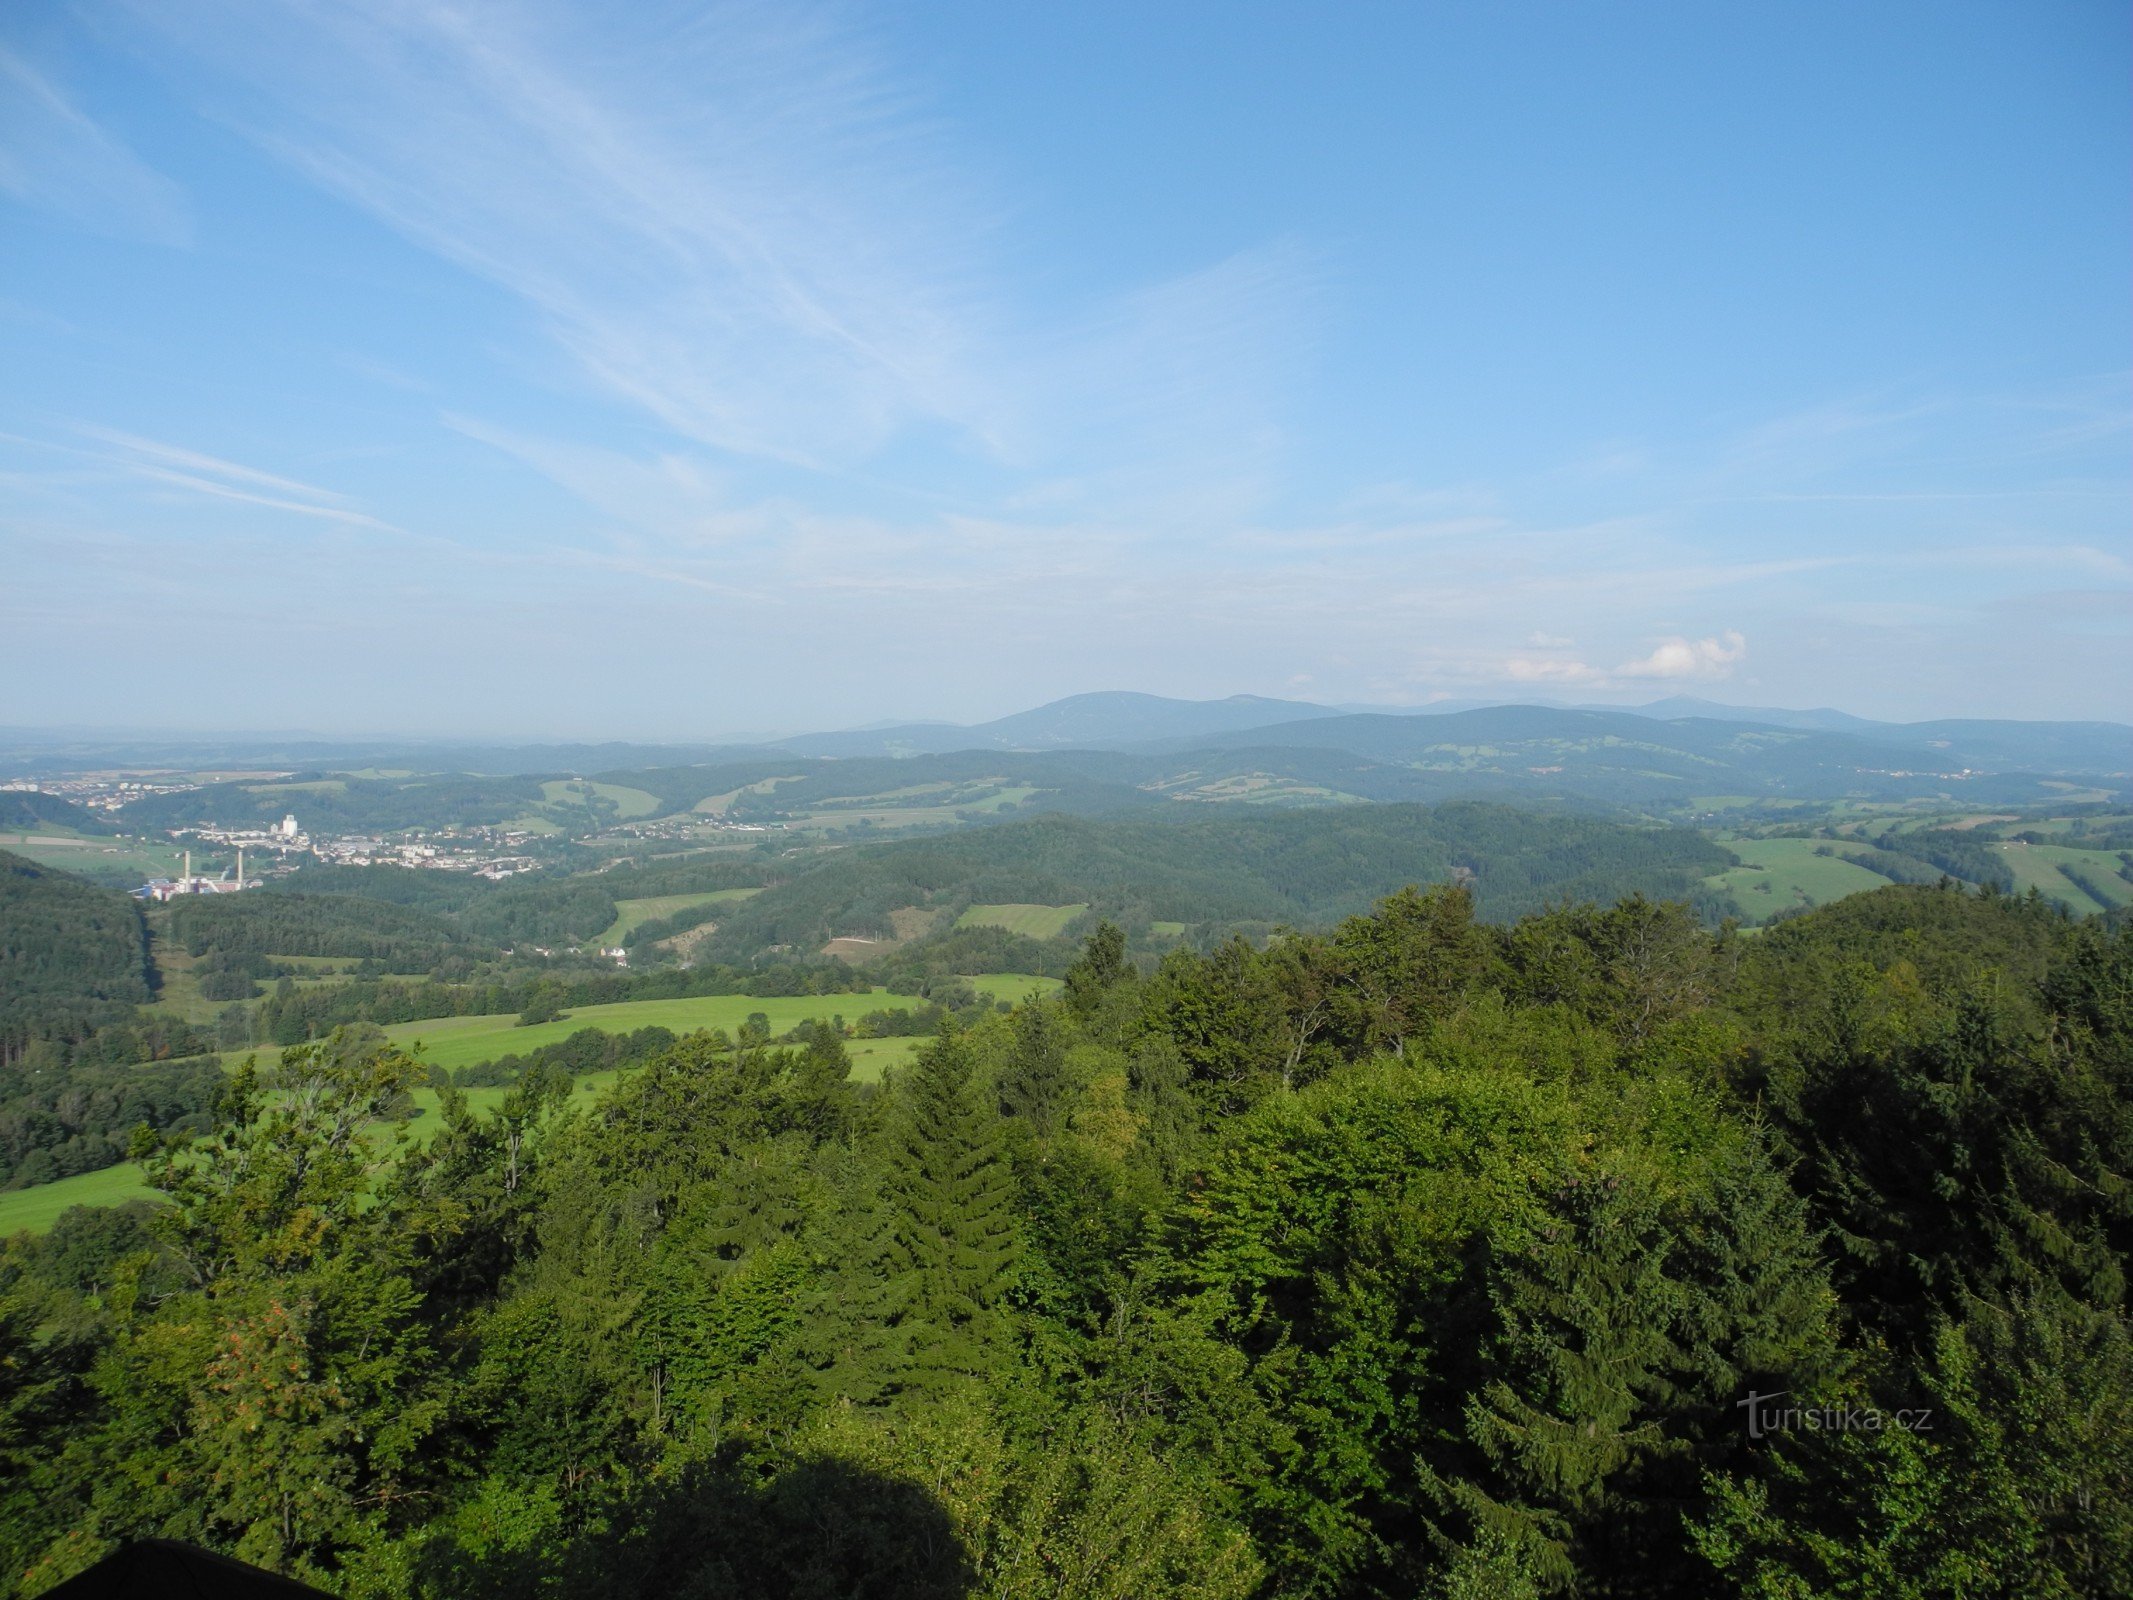 Las montañas de Jestřebí atraen a nuevos visitantes a los viajes